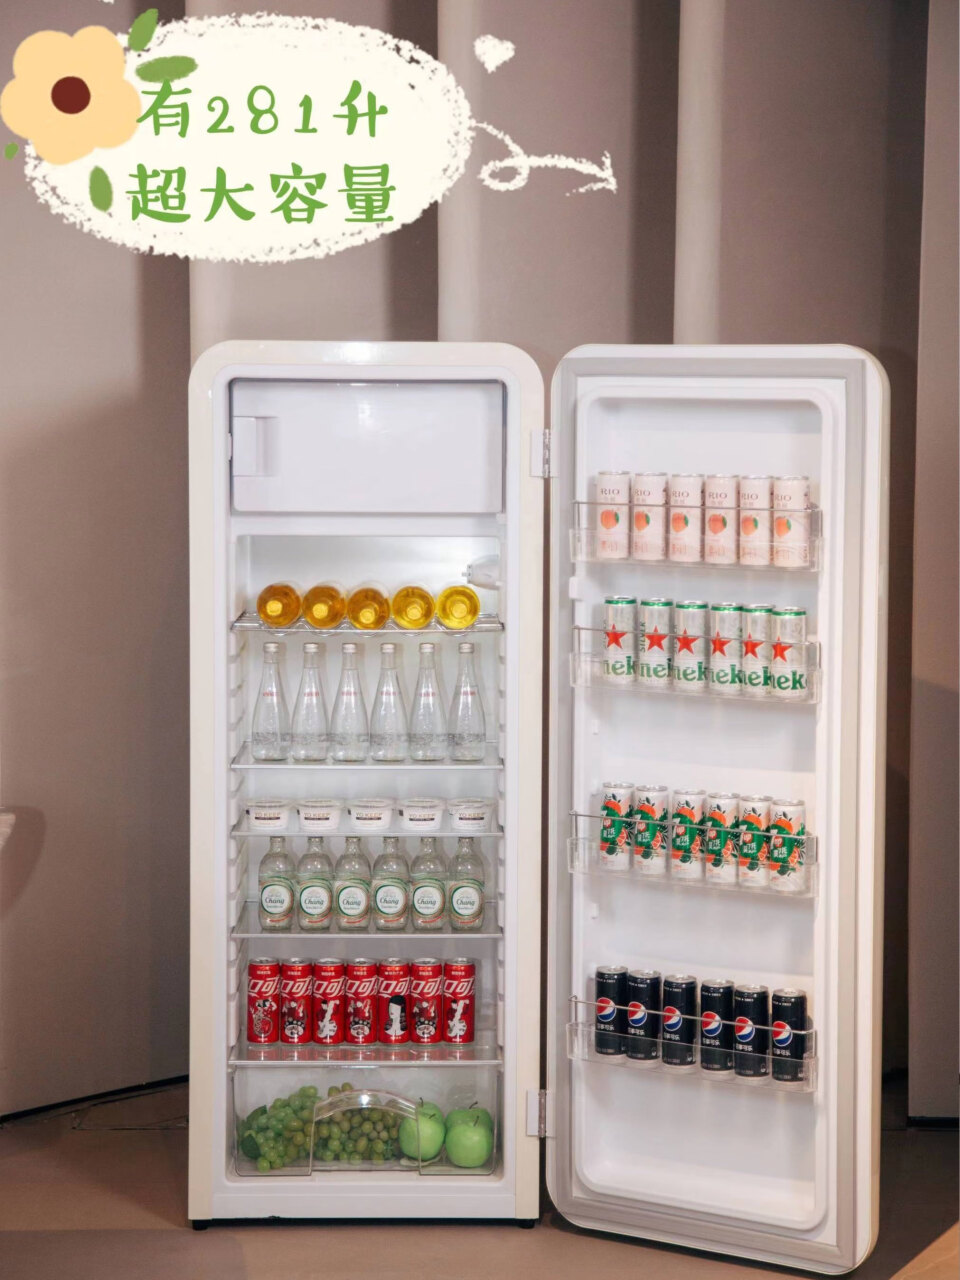 哈士奇复古冰箱大容量一级能效单门家用独立冷藏冷冻母婴冰箱储奶阴凉柜BC-130GGA浅黄色(哈士奇复古小冰箱),第2张